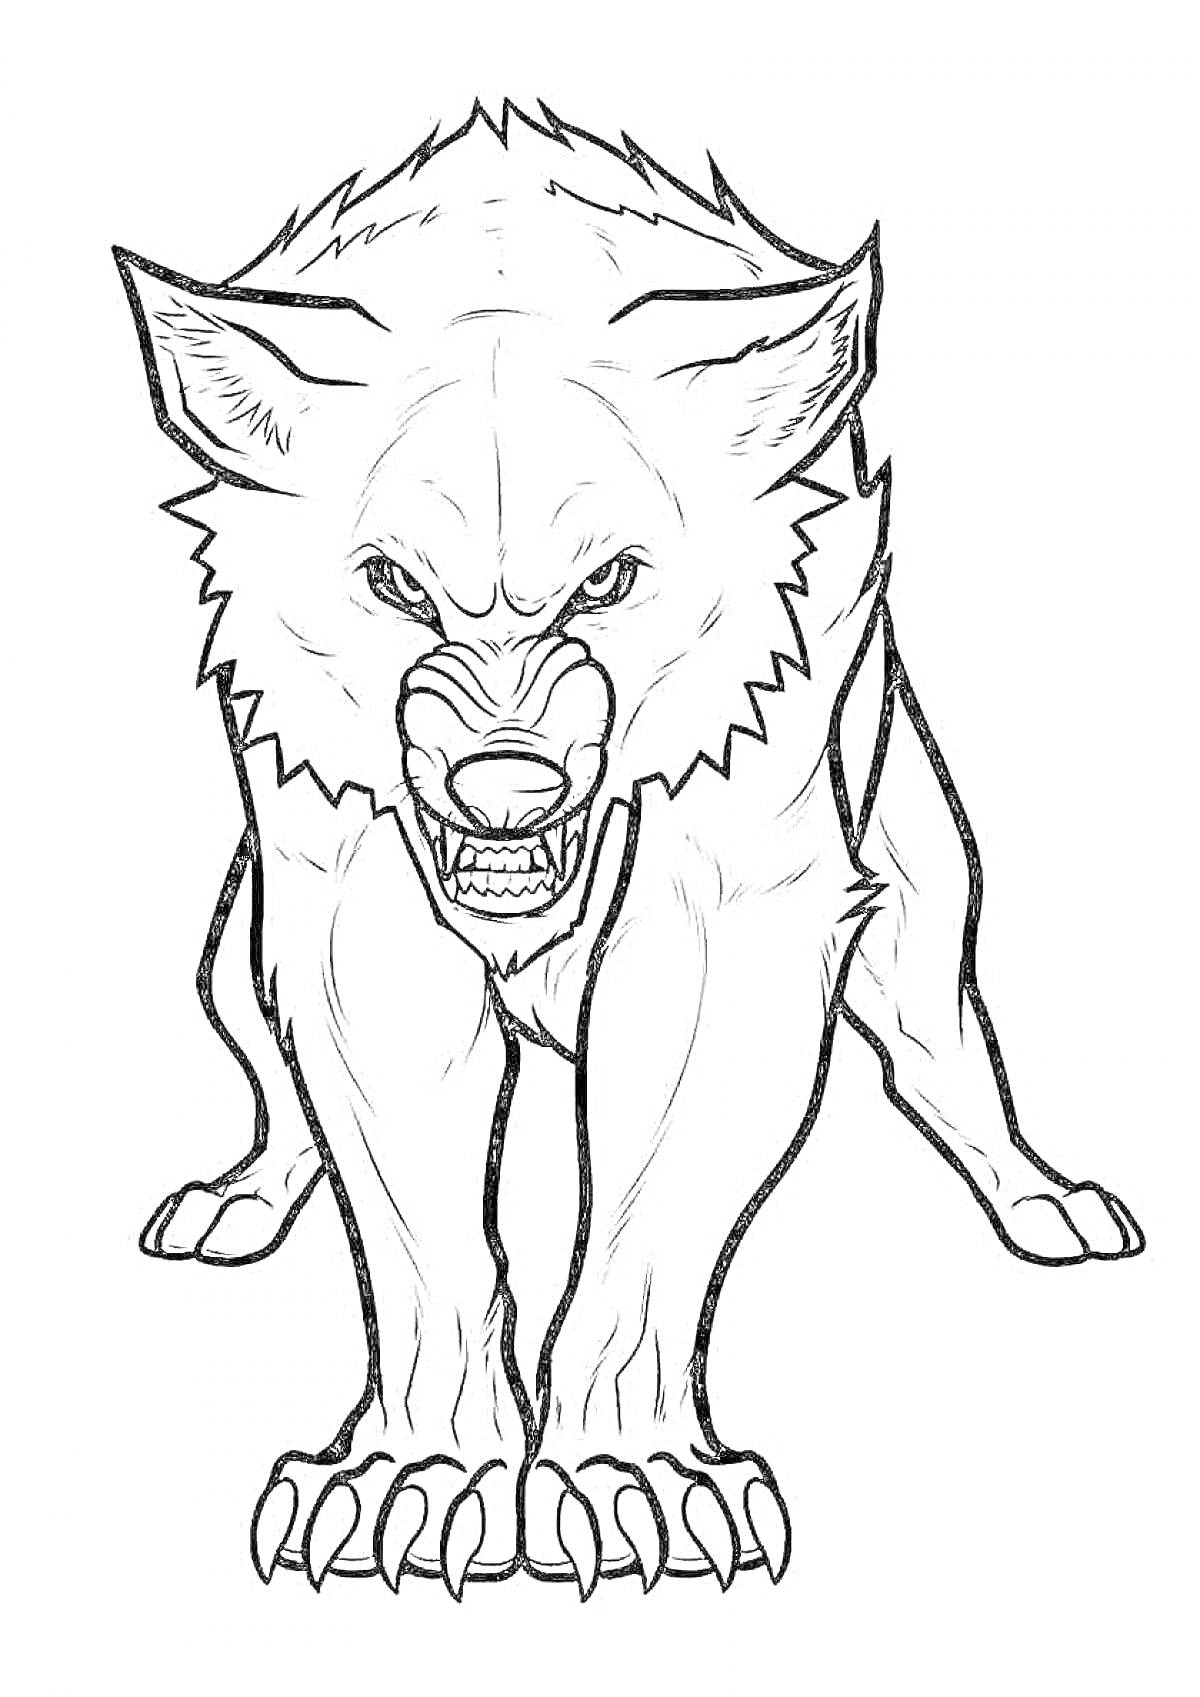 Раскраска агрессивный волк с оскаленными зубами на белом фоне